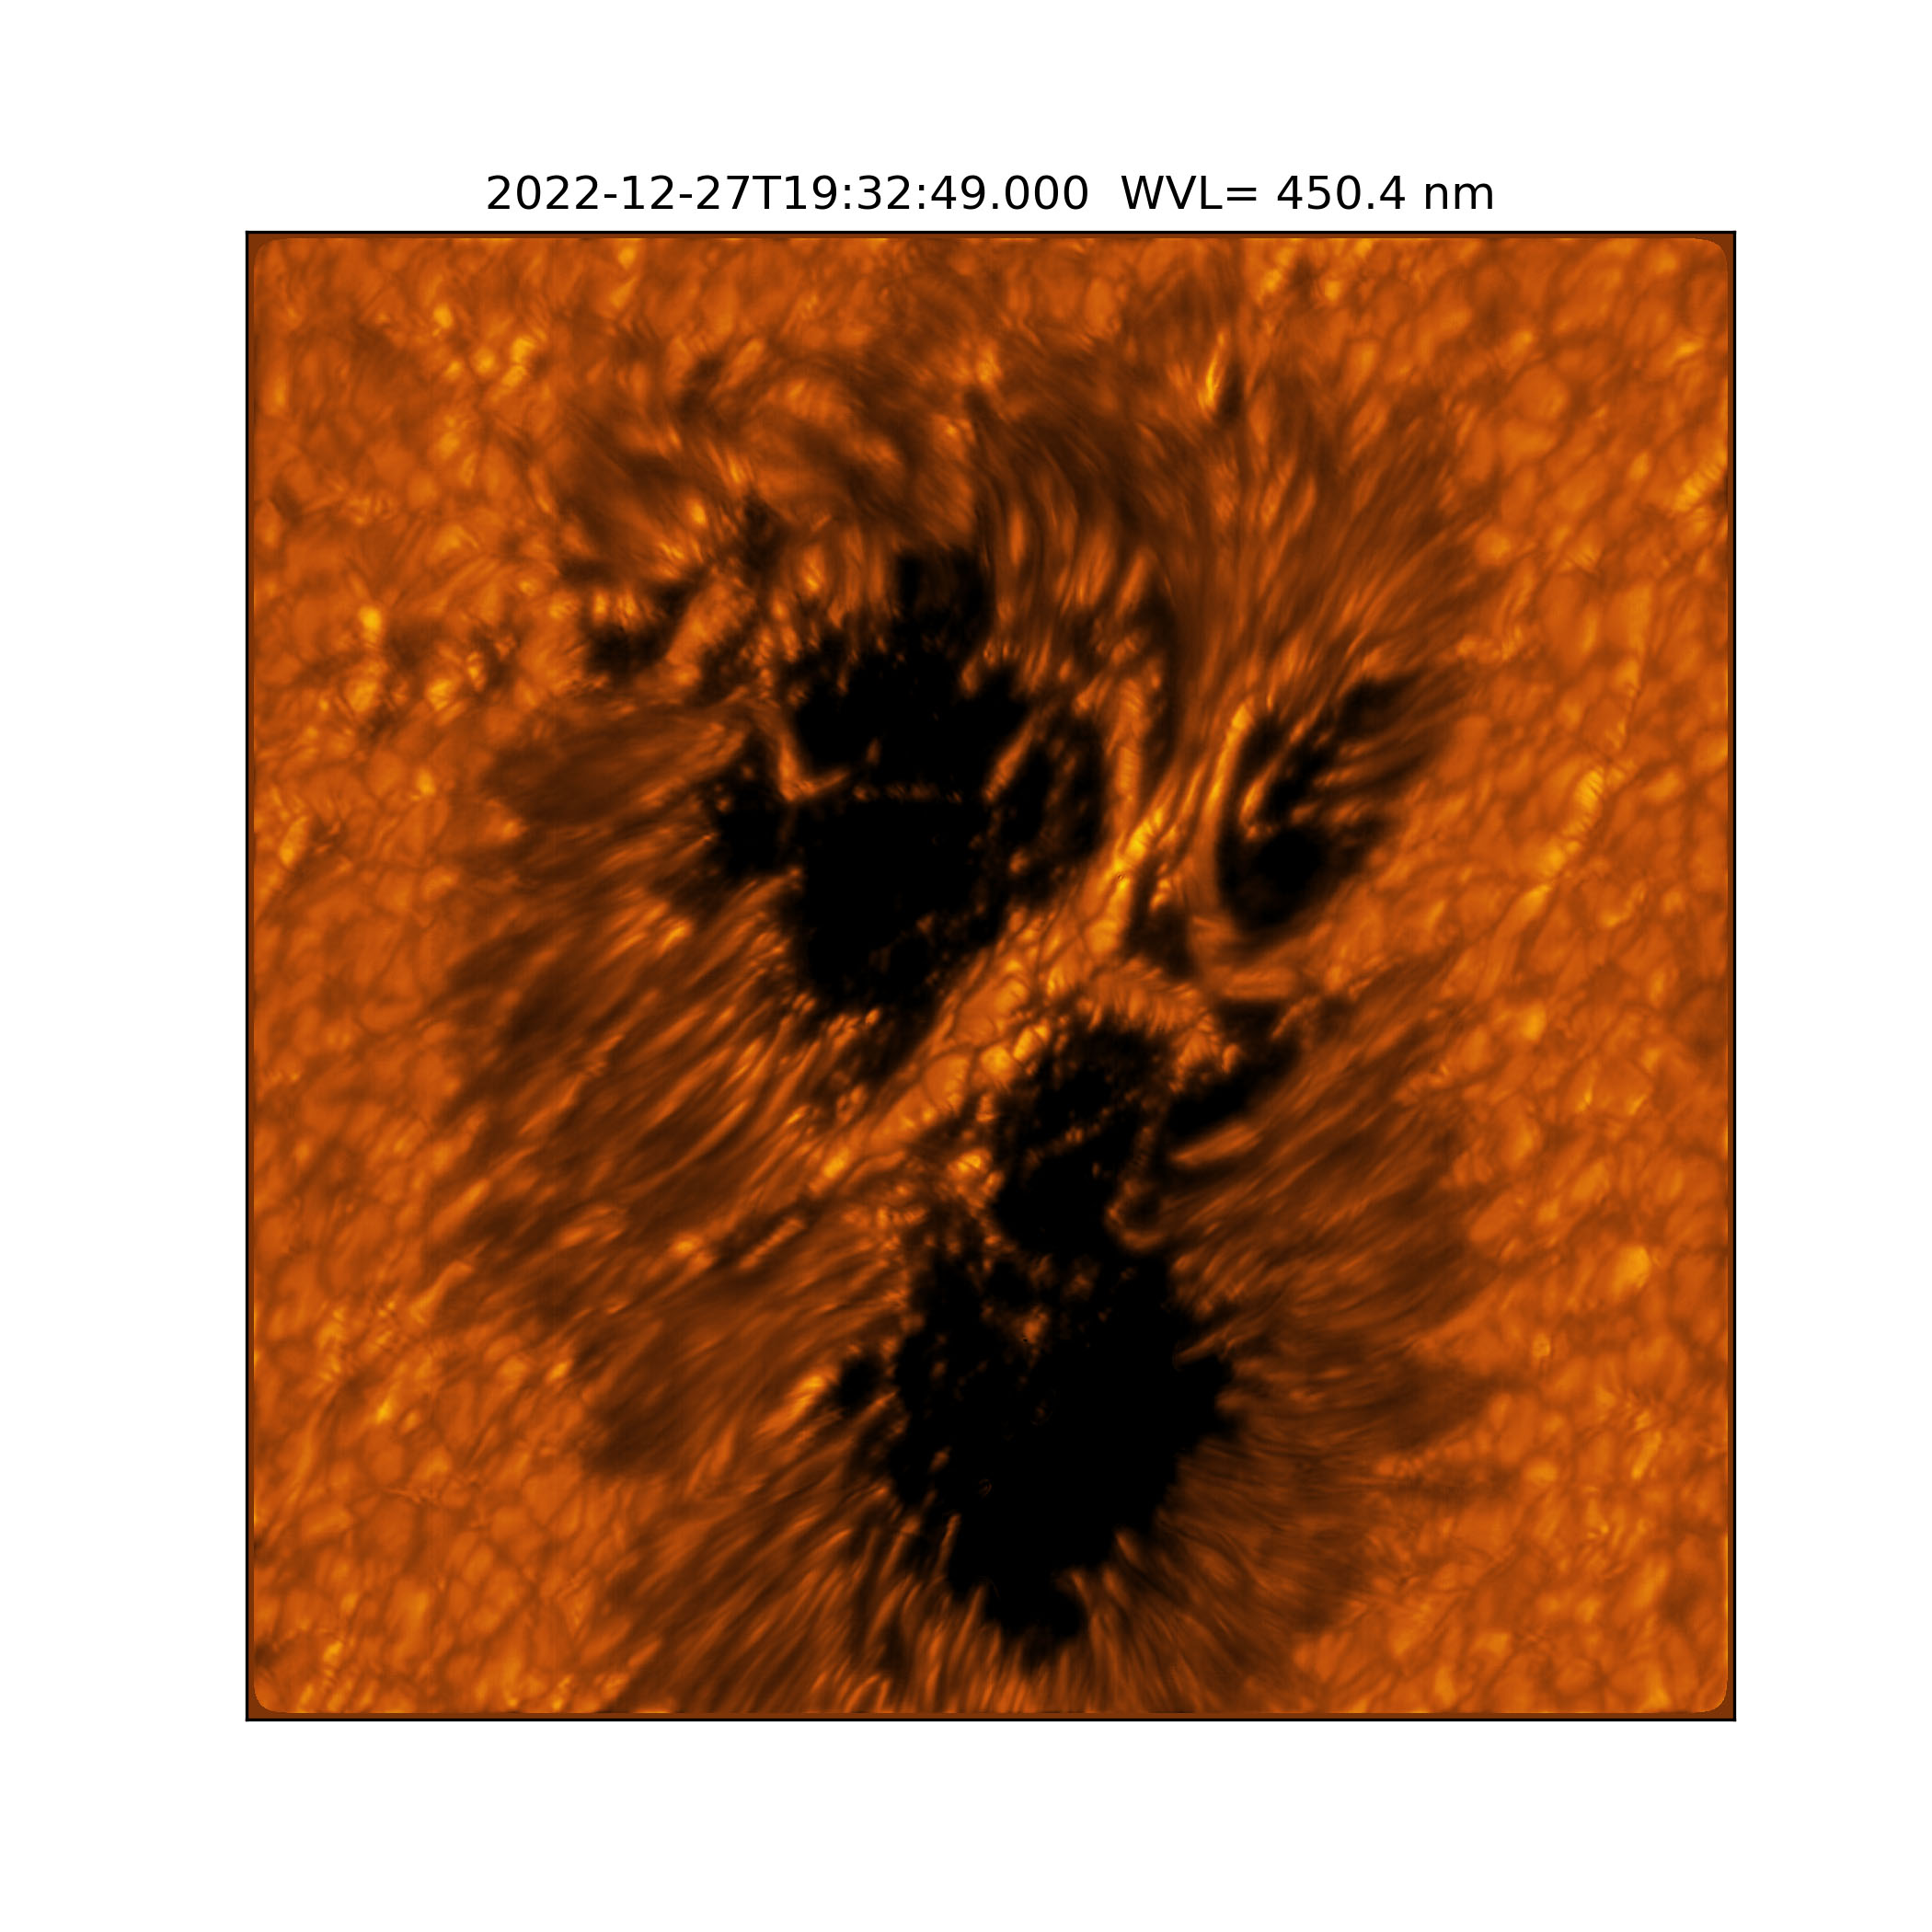 Ще одне зображення сонячної плями. Таку незвичну форму їй забезпечили так звані&amp;nbsp;«містки» плазми, що перетинають центральні частини кількох плям у скупченні. Вважається, що їхня поява пов'язана із руйнуванням плями. NSF / AURA / NSO